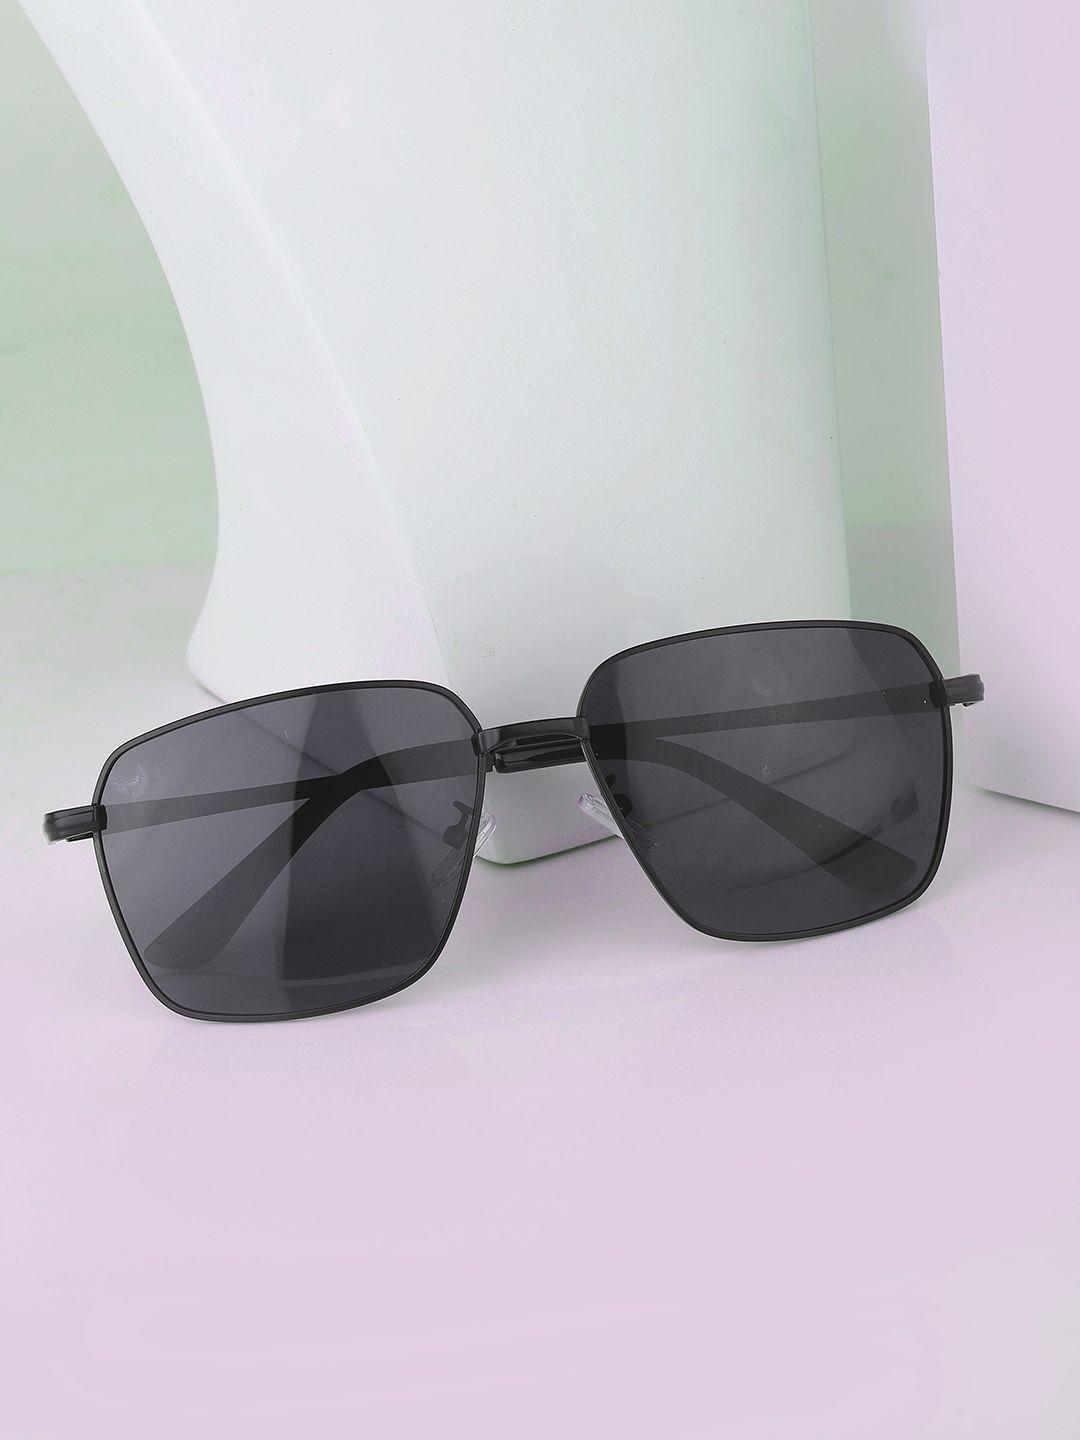 carlton london men black lens & black rectangle sunglasses clsm019-